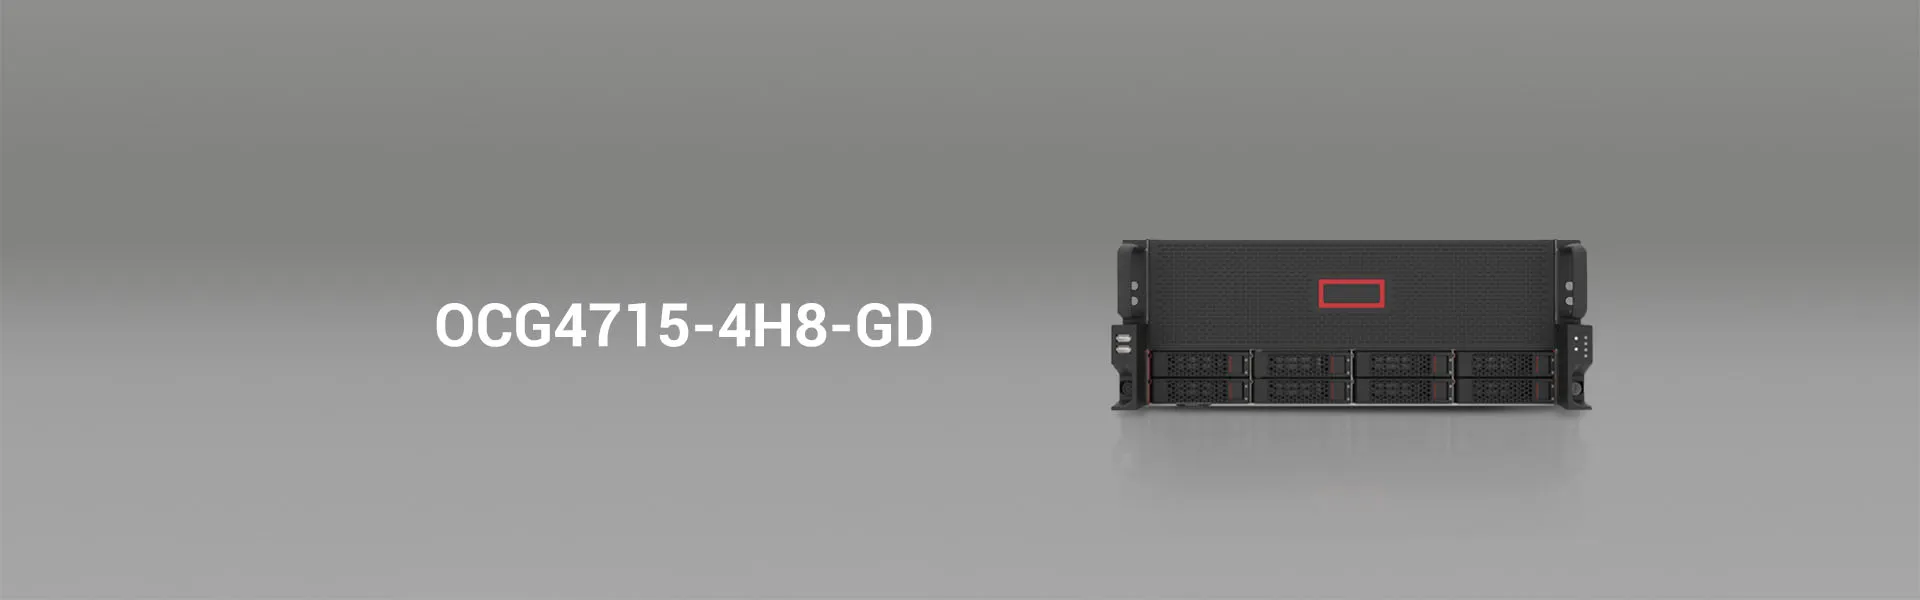 4U GPU server Case - OCG4715-4H8-GD-onechassis